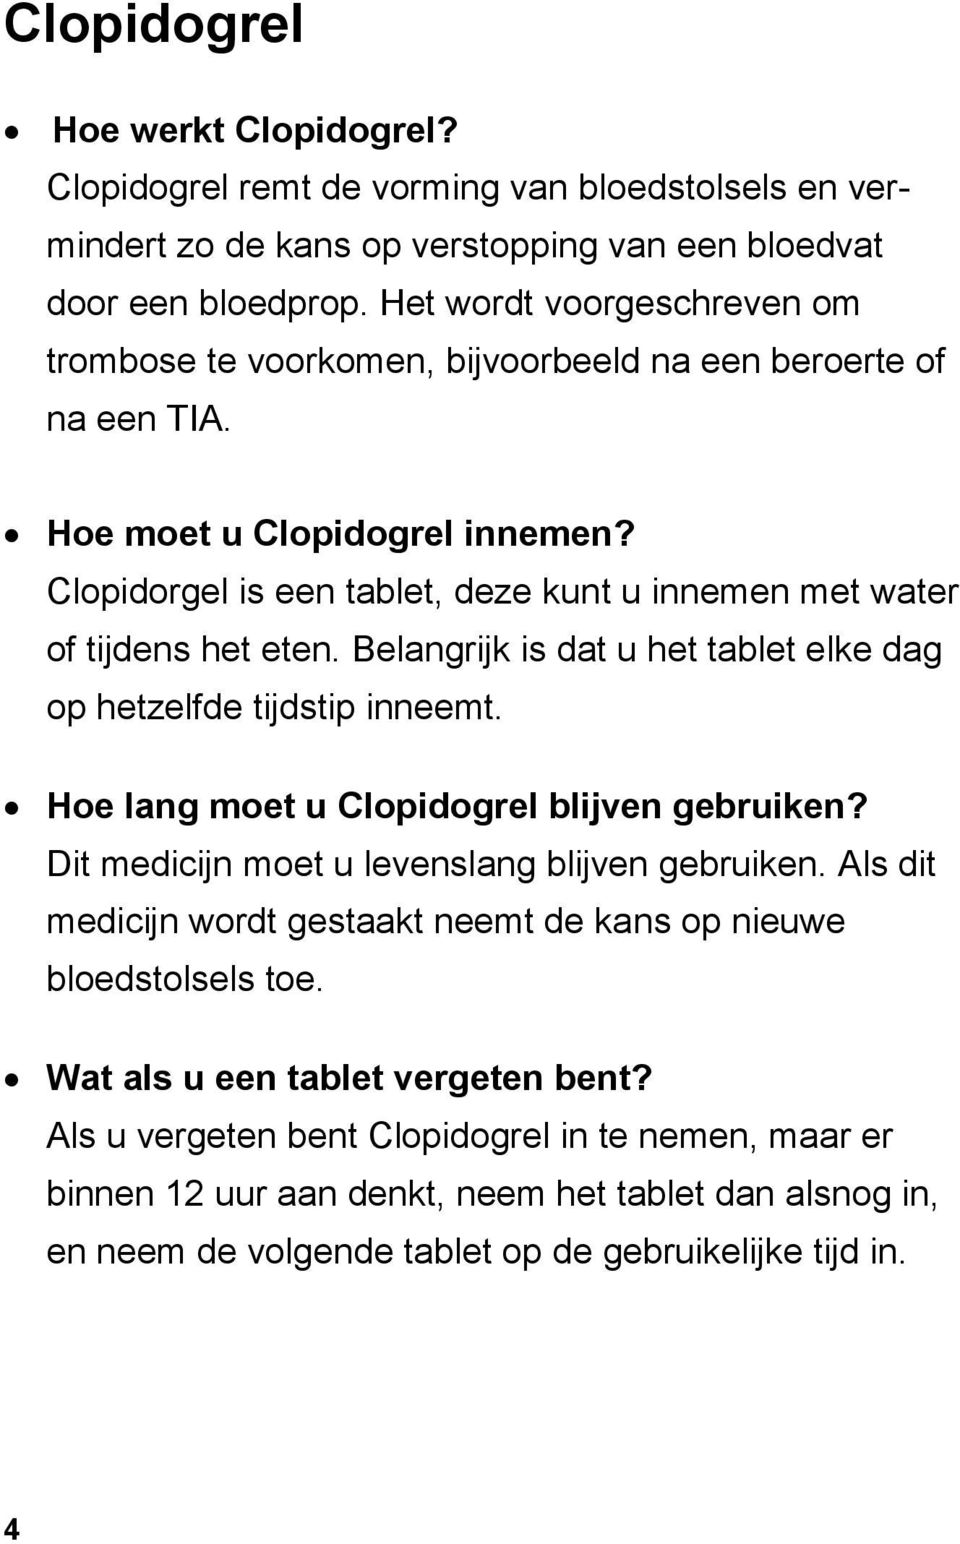 Clopidorgel is een tablet, deze kunt u innemen met water of tijdens het eten. Belangrijk is dat u het tablet elke dag op hetzelfde tijdstip inneemt. Hoe lang moet u Clopidogrel blijven gebruiken?